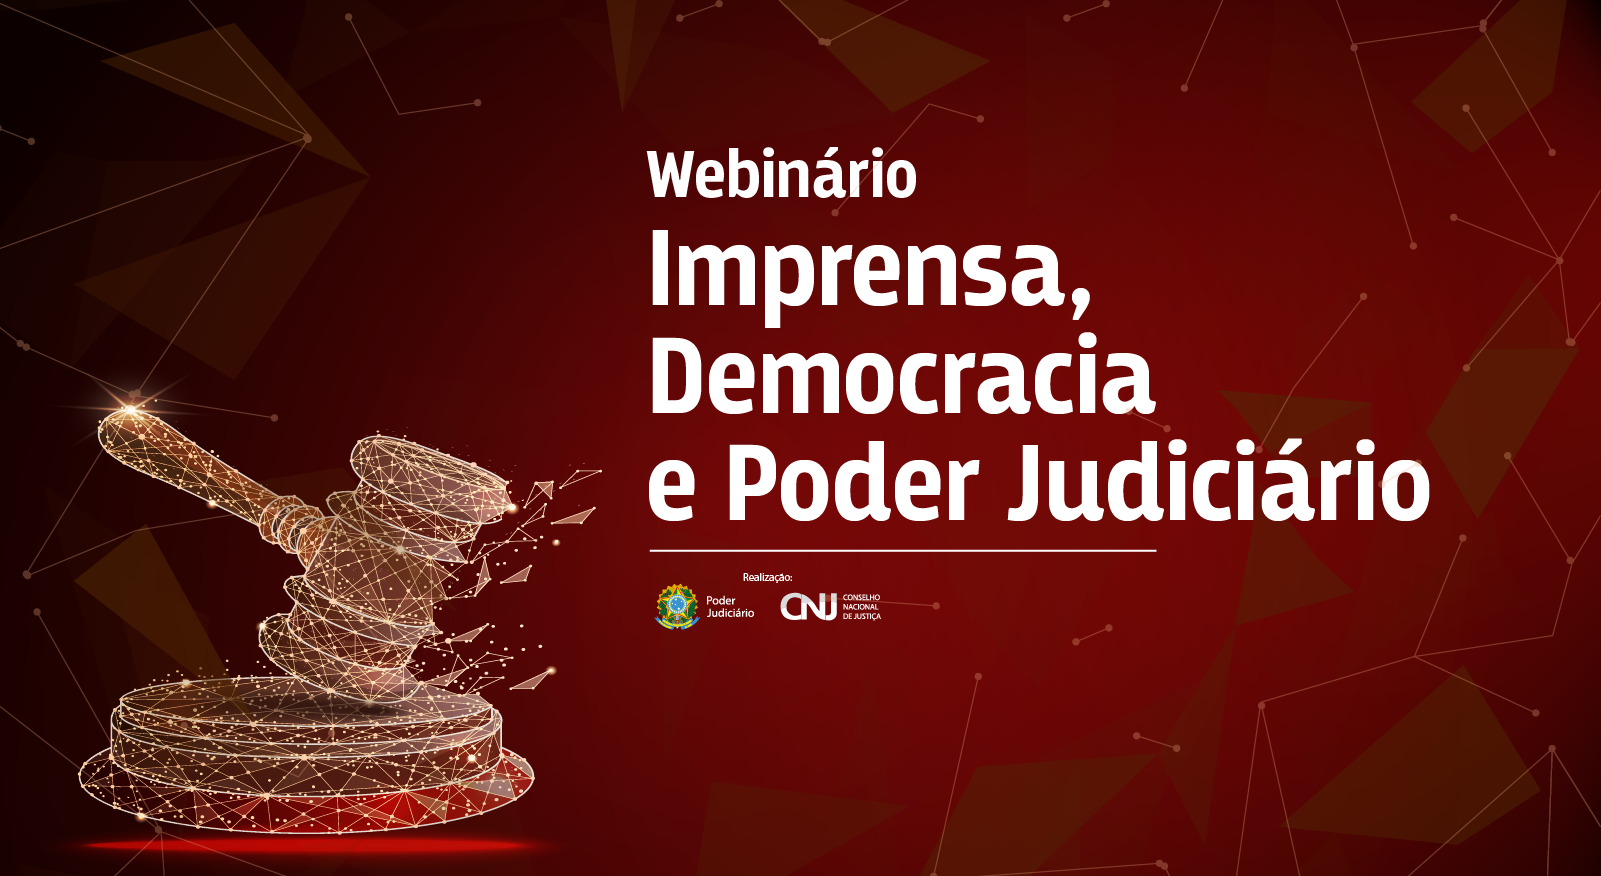 INSTITUCIONAL: Último dia para se inscrever no webinário “Imprensa, Democracia e Poder Judiciário” do CNJ